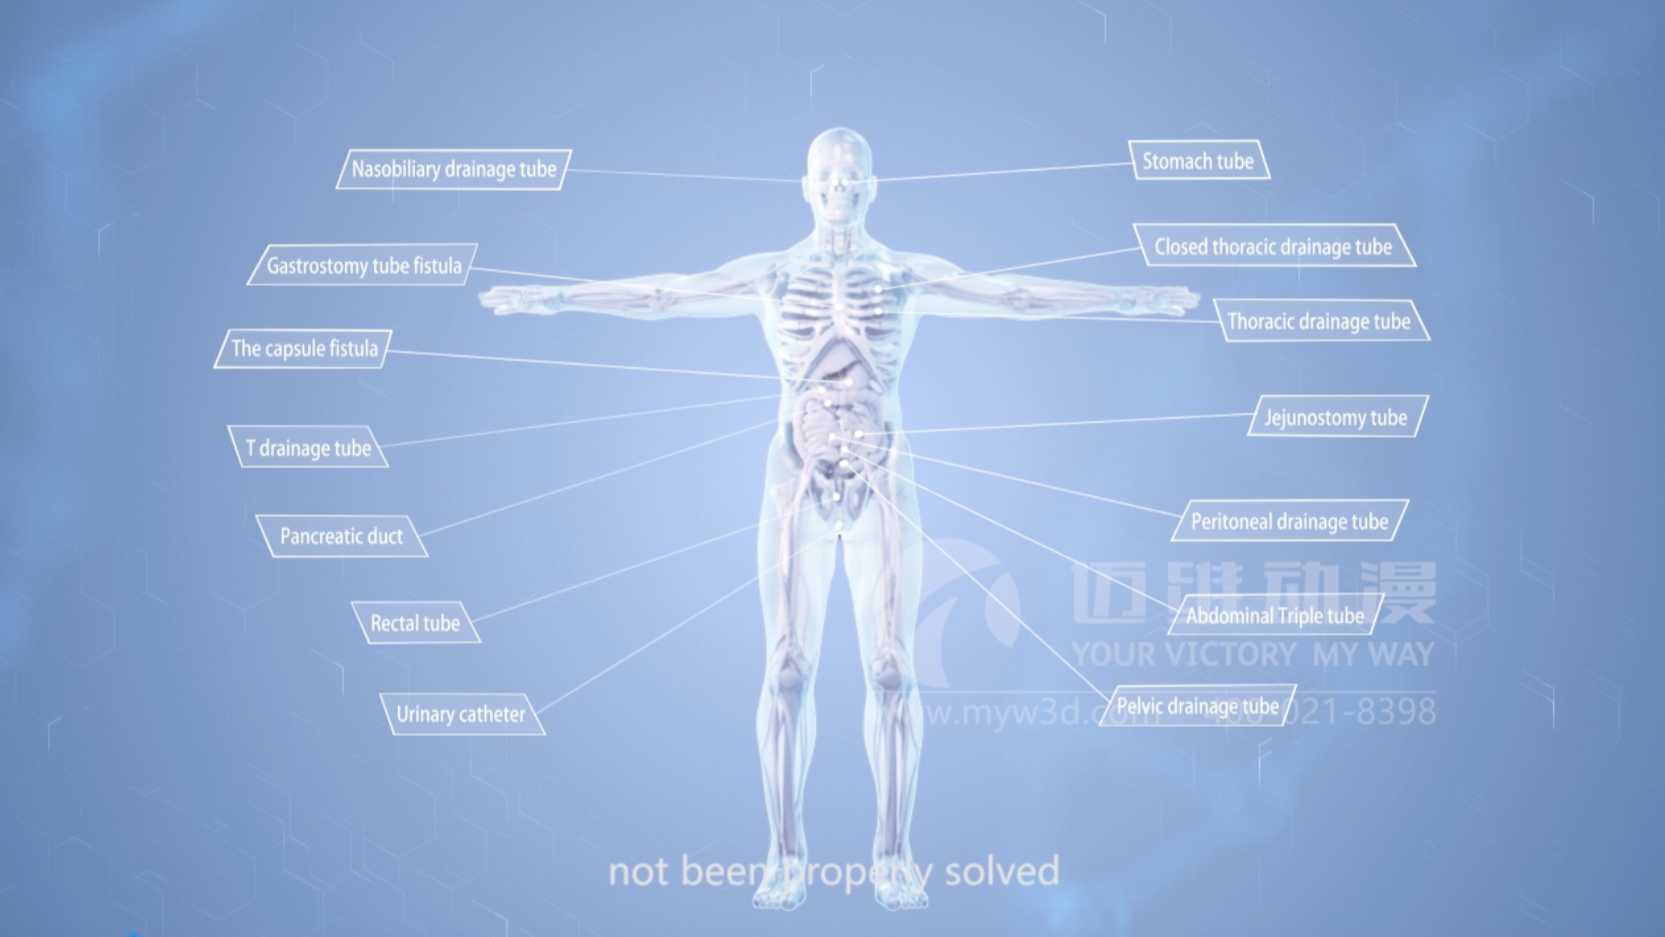 医学动画原理展示案例展示合集-医学三维动画制作公司